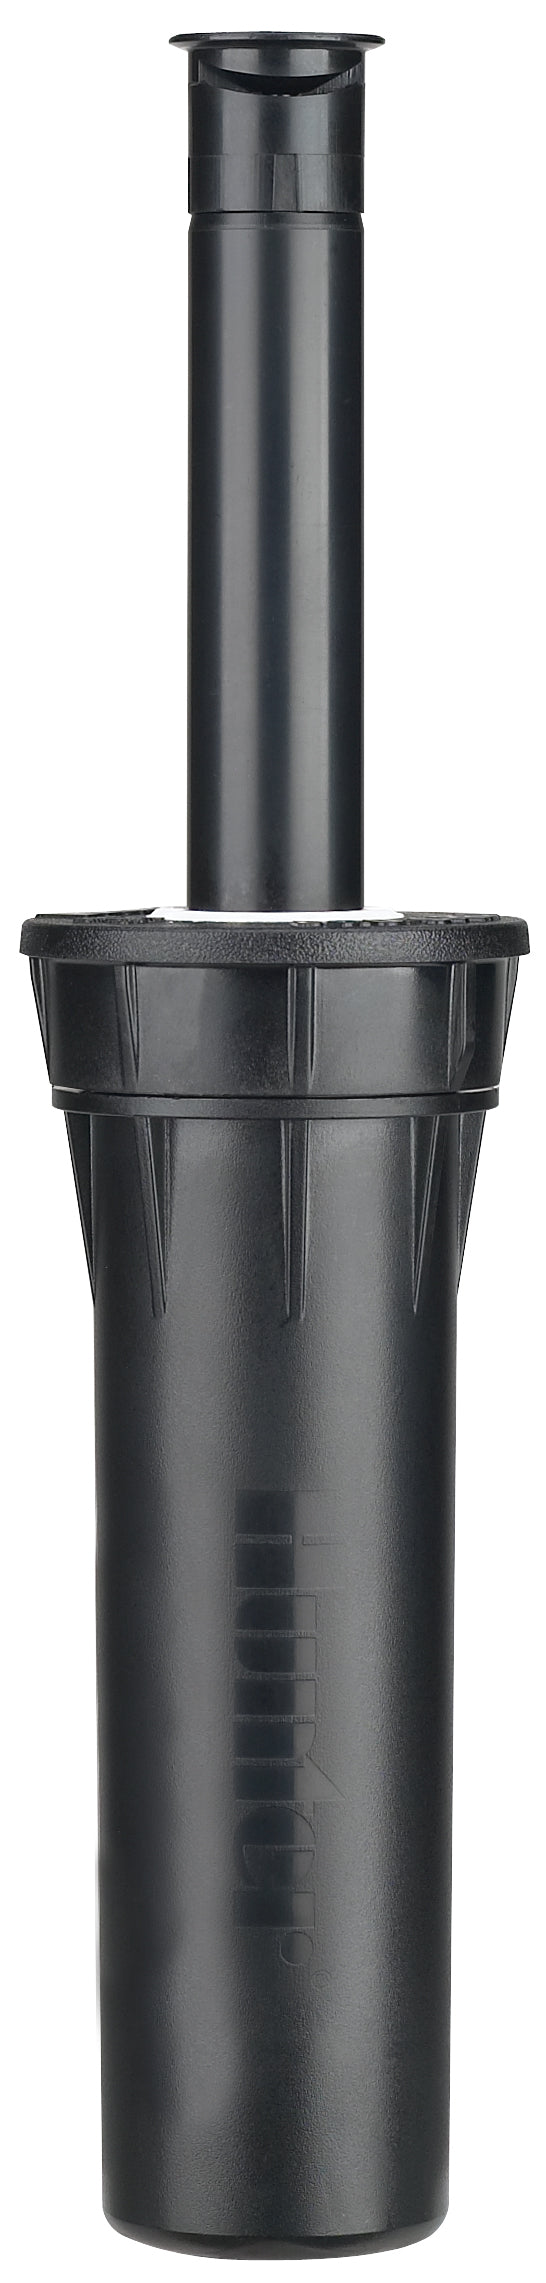 Hunter Pro Spray Nozzle 5.3m 25-360 Degrees Stream Nozzle